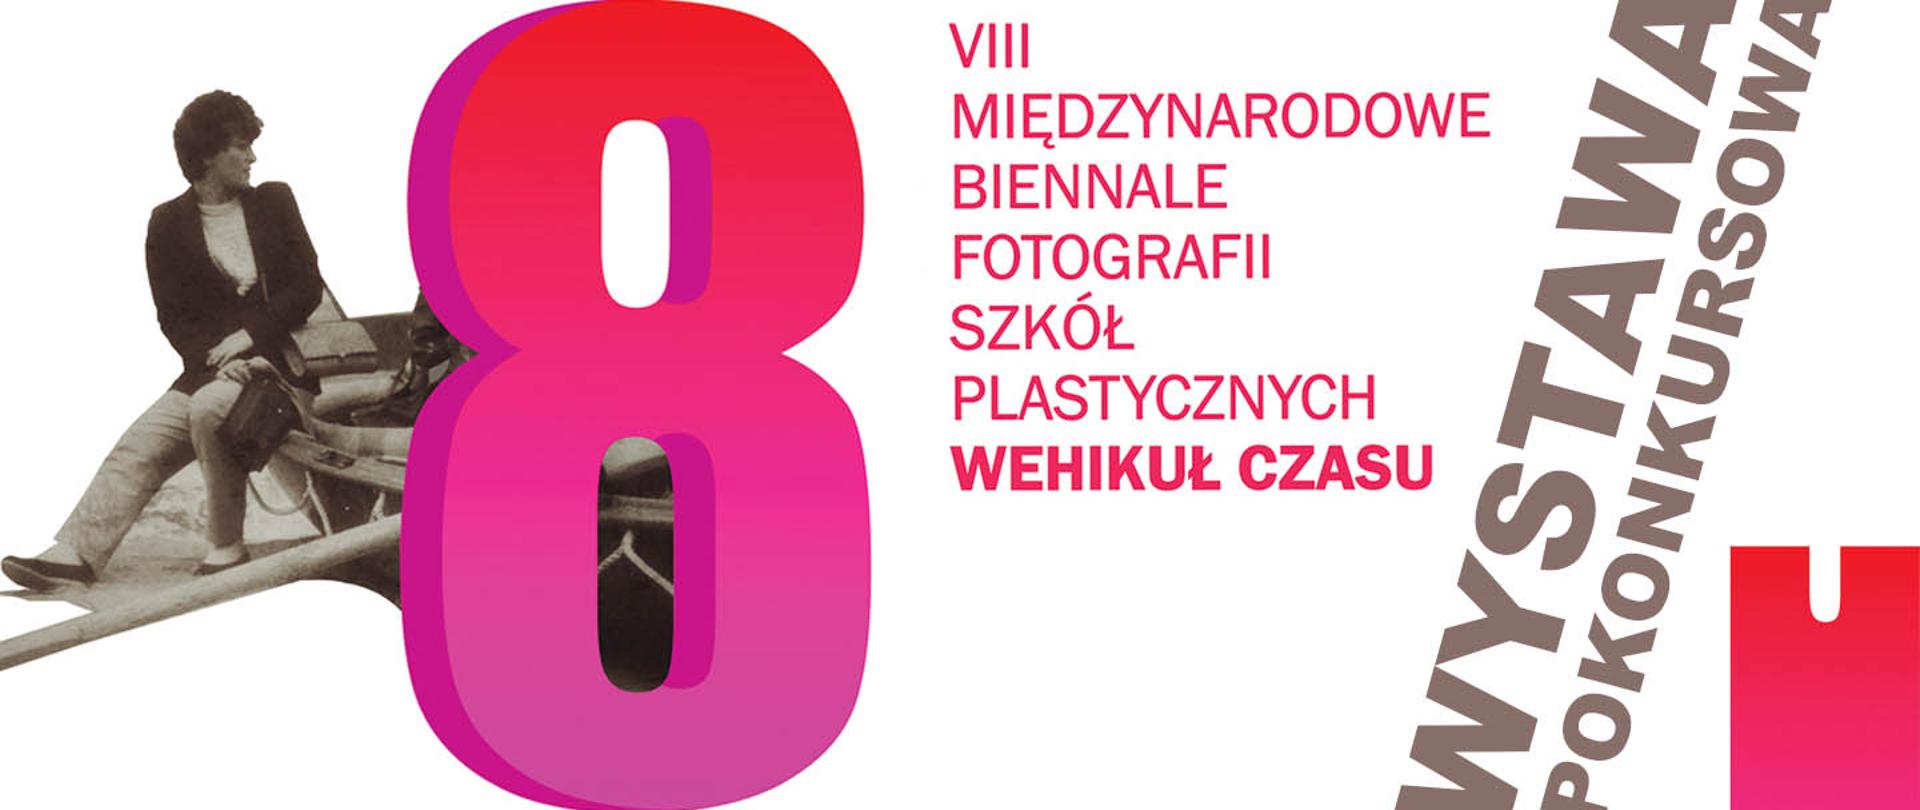 Plakat do wystawy pokonkursowej VIII Międzynarodowego Biennale Fotografii Szkół Plastycznych - Wehikuł czasu